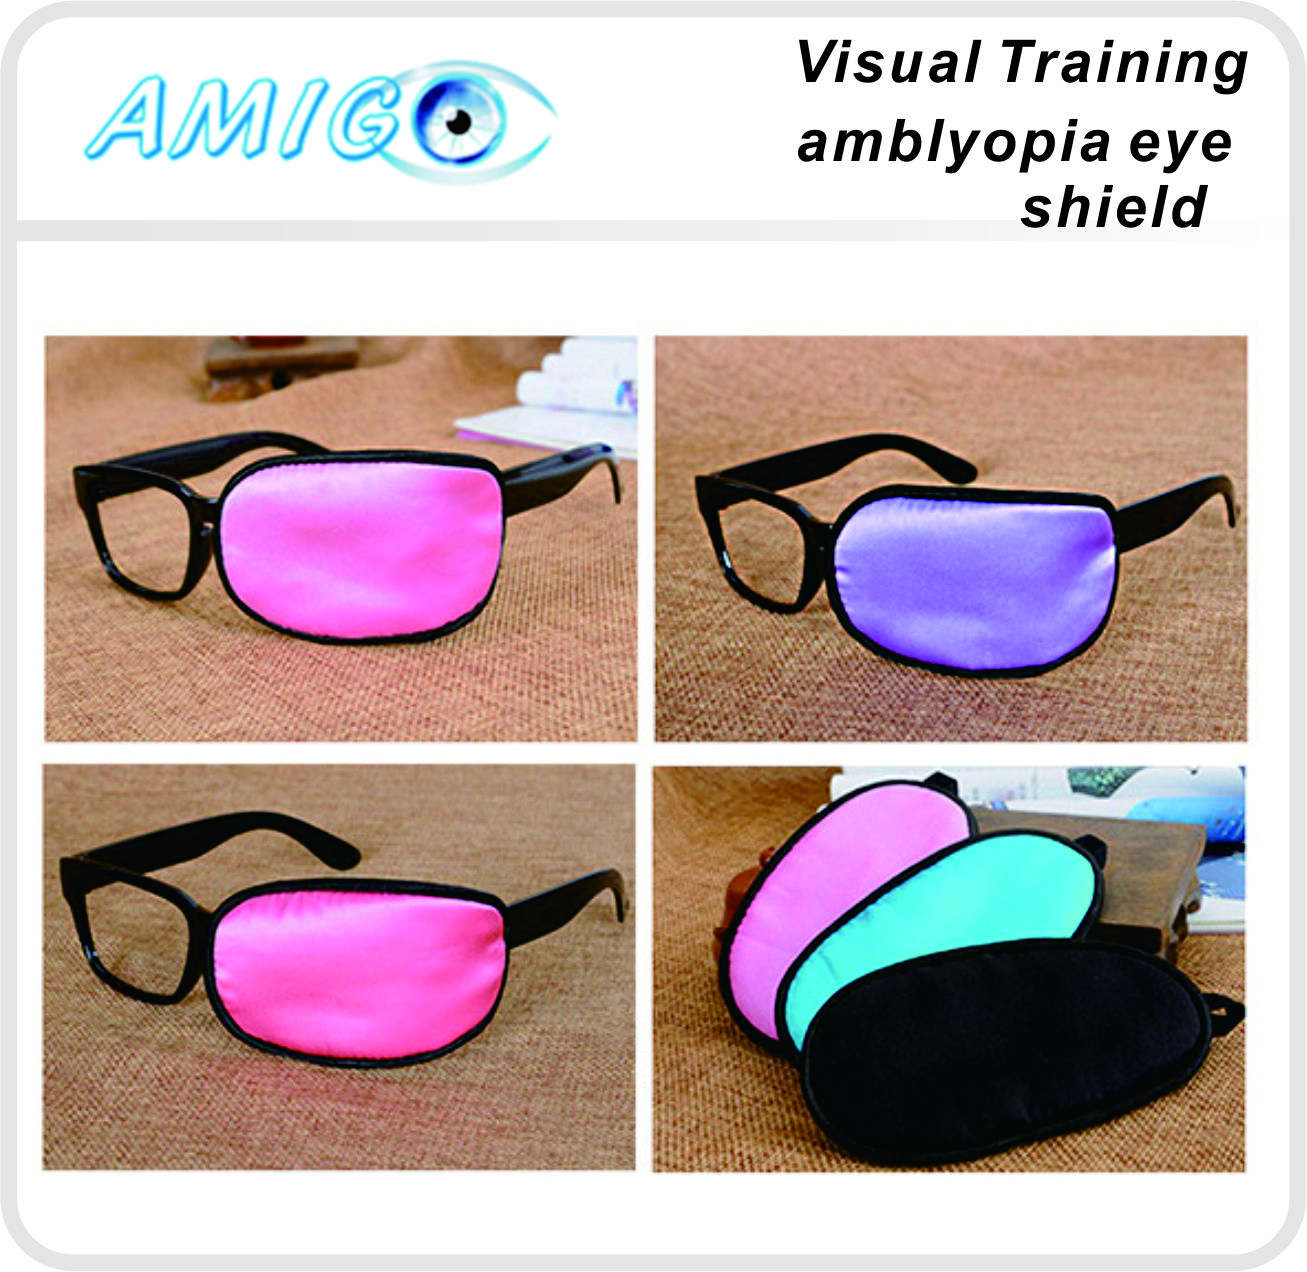 amblyopia eye shield